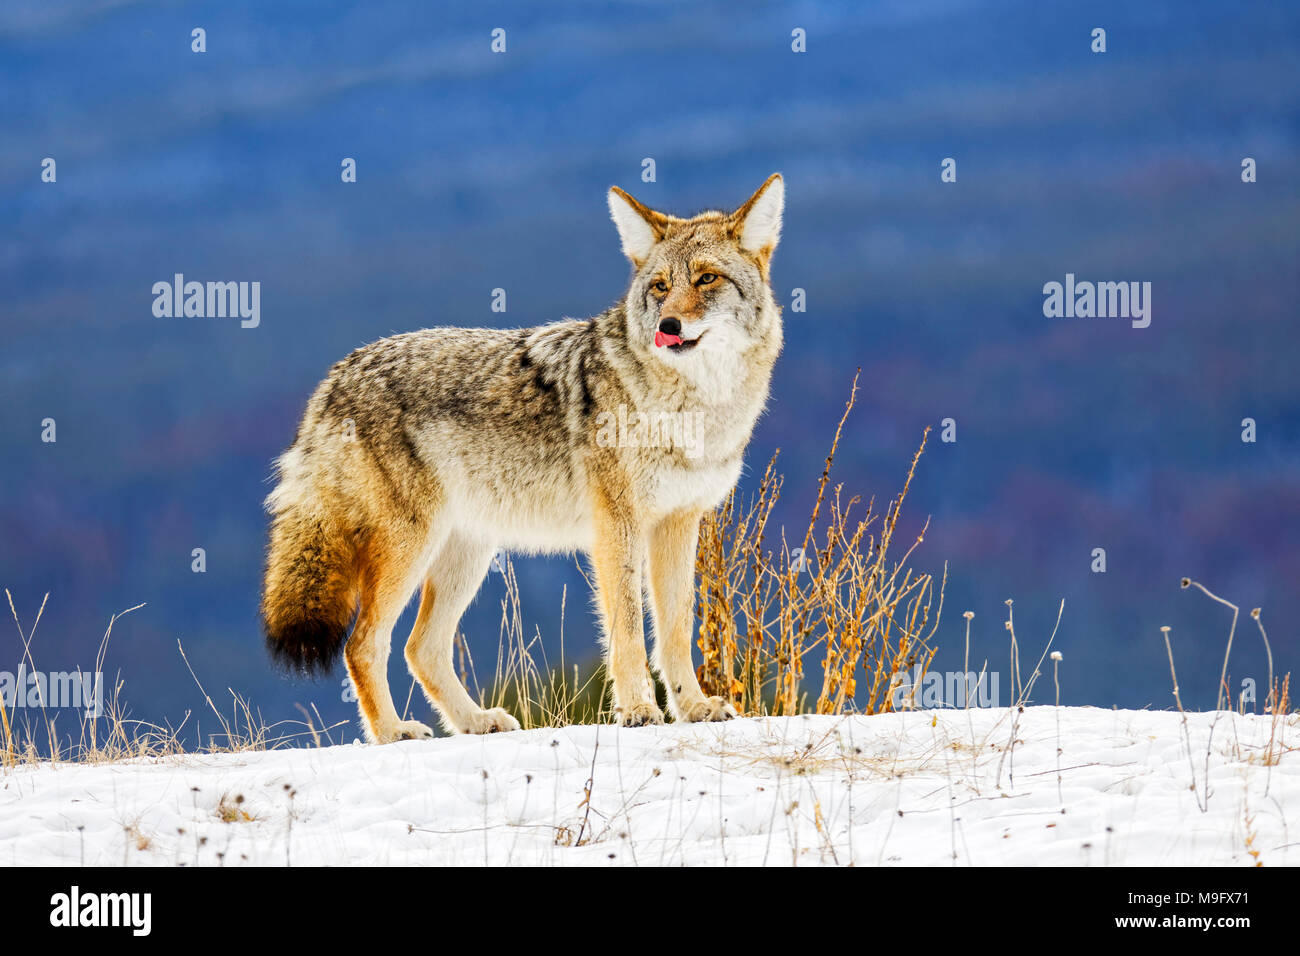 42 751,09179 close up close-up of a permanent Coyote broadside sur crête d'une colline de neige en hiver, léchant ses lèvres, nez Banque D'Images